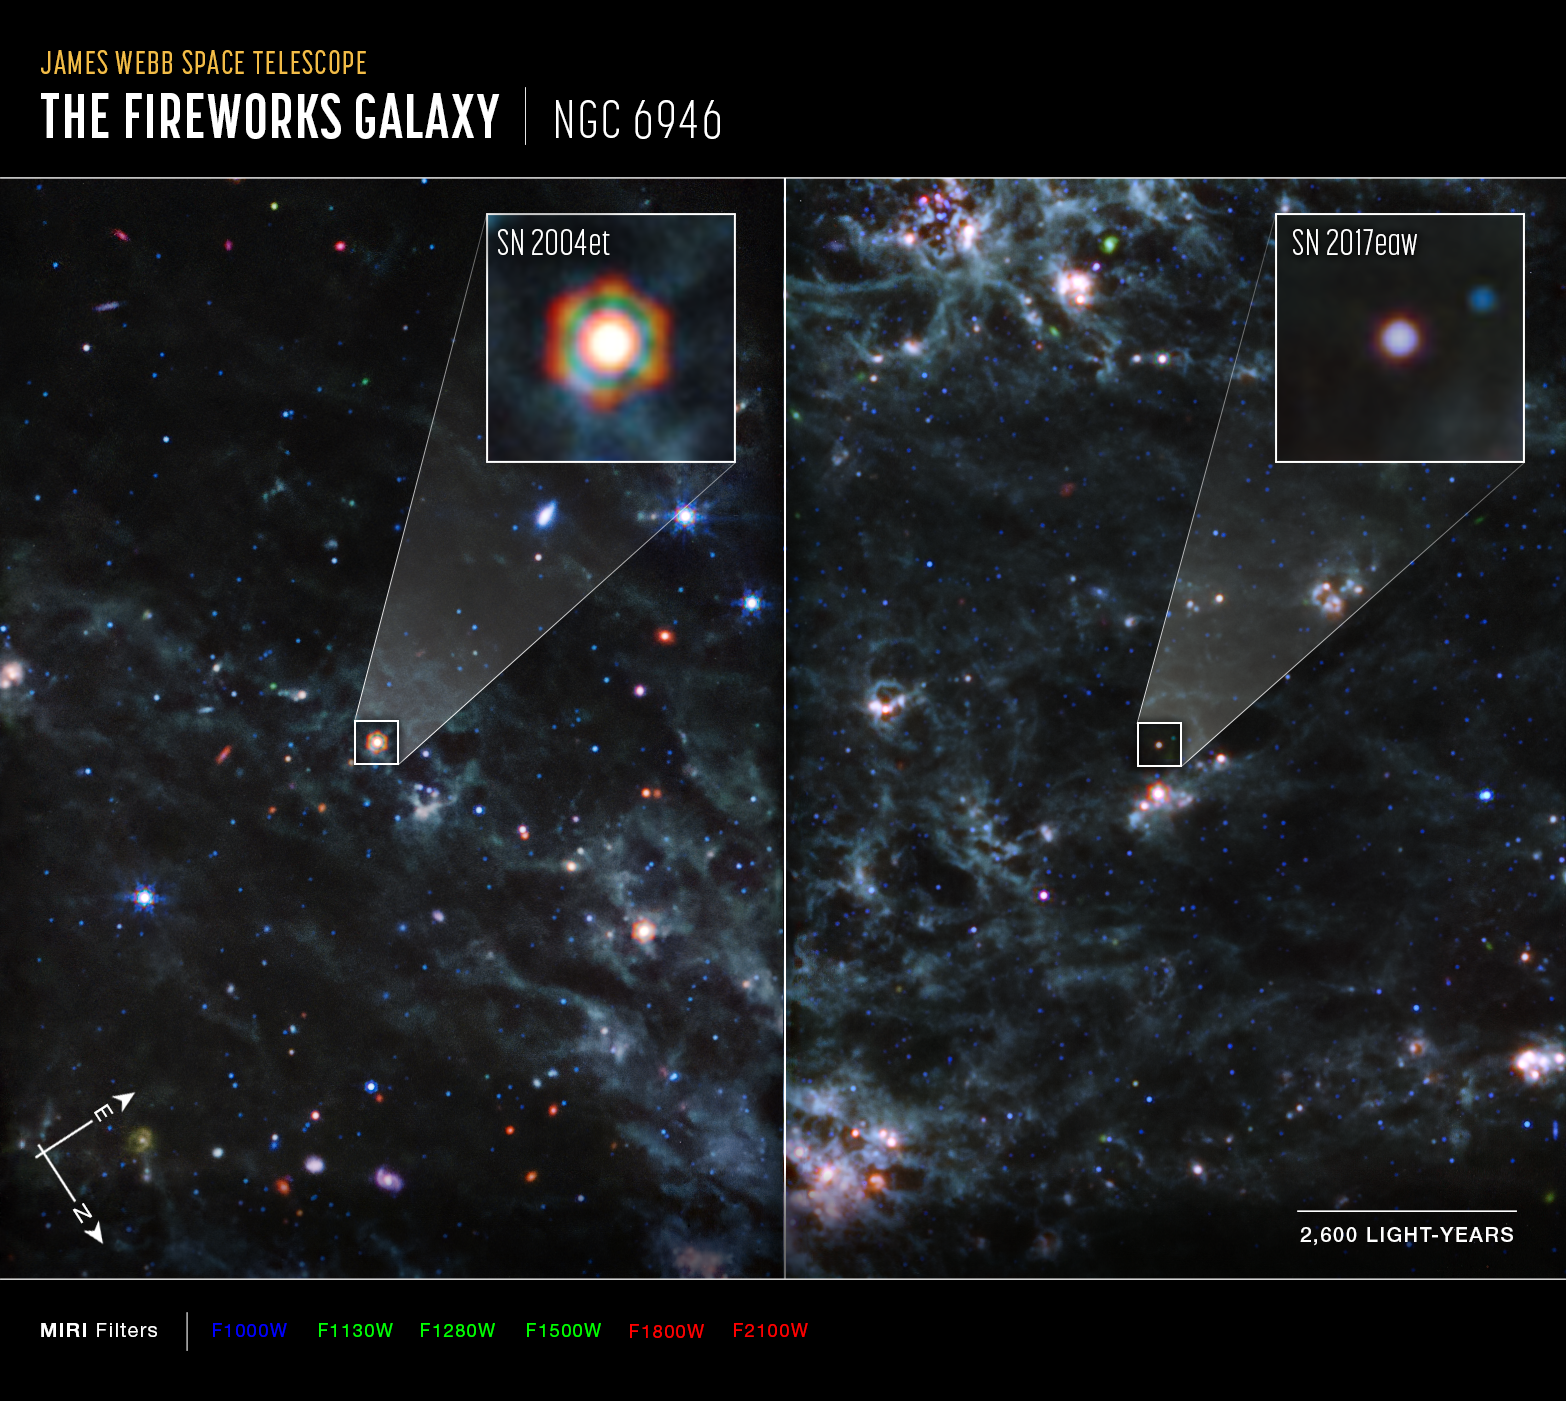 Na ilustracji: Zdjęcia fragmentów galaktyki zwanej Galaktyką Fajerwerk (NGC 6946) z zaznaczonymi pozycjami supernowych SN 2004et i SN 2017eaw, które sfotografowała kamera MIRI współpracująca z Teleskopem Webba. Na ilustracji zaznaczono orientację na niebie oraz skalę (odcinek ~2600 l.św.). Jest to obraz w niewidzialnym zakresie promieniowania zwanym  średnią podczerwienią, którego kolory przekonwertowano (zamapowano) do następującego, widzialnego zakresu barw: niebieski / zielony / czerwony– co odpowiada następującym długościom fali: 10μm / 11,3 + 12,8 + 15,0μm / 18 + 21μm (odpowiada to następującym filtrom kamery MIRI: F1000W / F1130W + F1280W + F1500W / F1800W + F2100W). Źródło: NASA, ESA, CSA, Ori Fox (STScI), Melissa Shahbandeh (STScI), Alyssa Pagan (STScI)